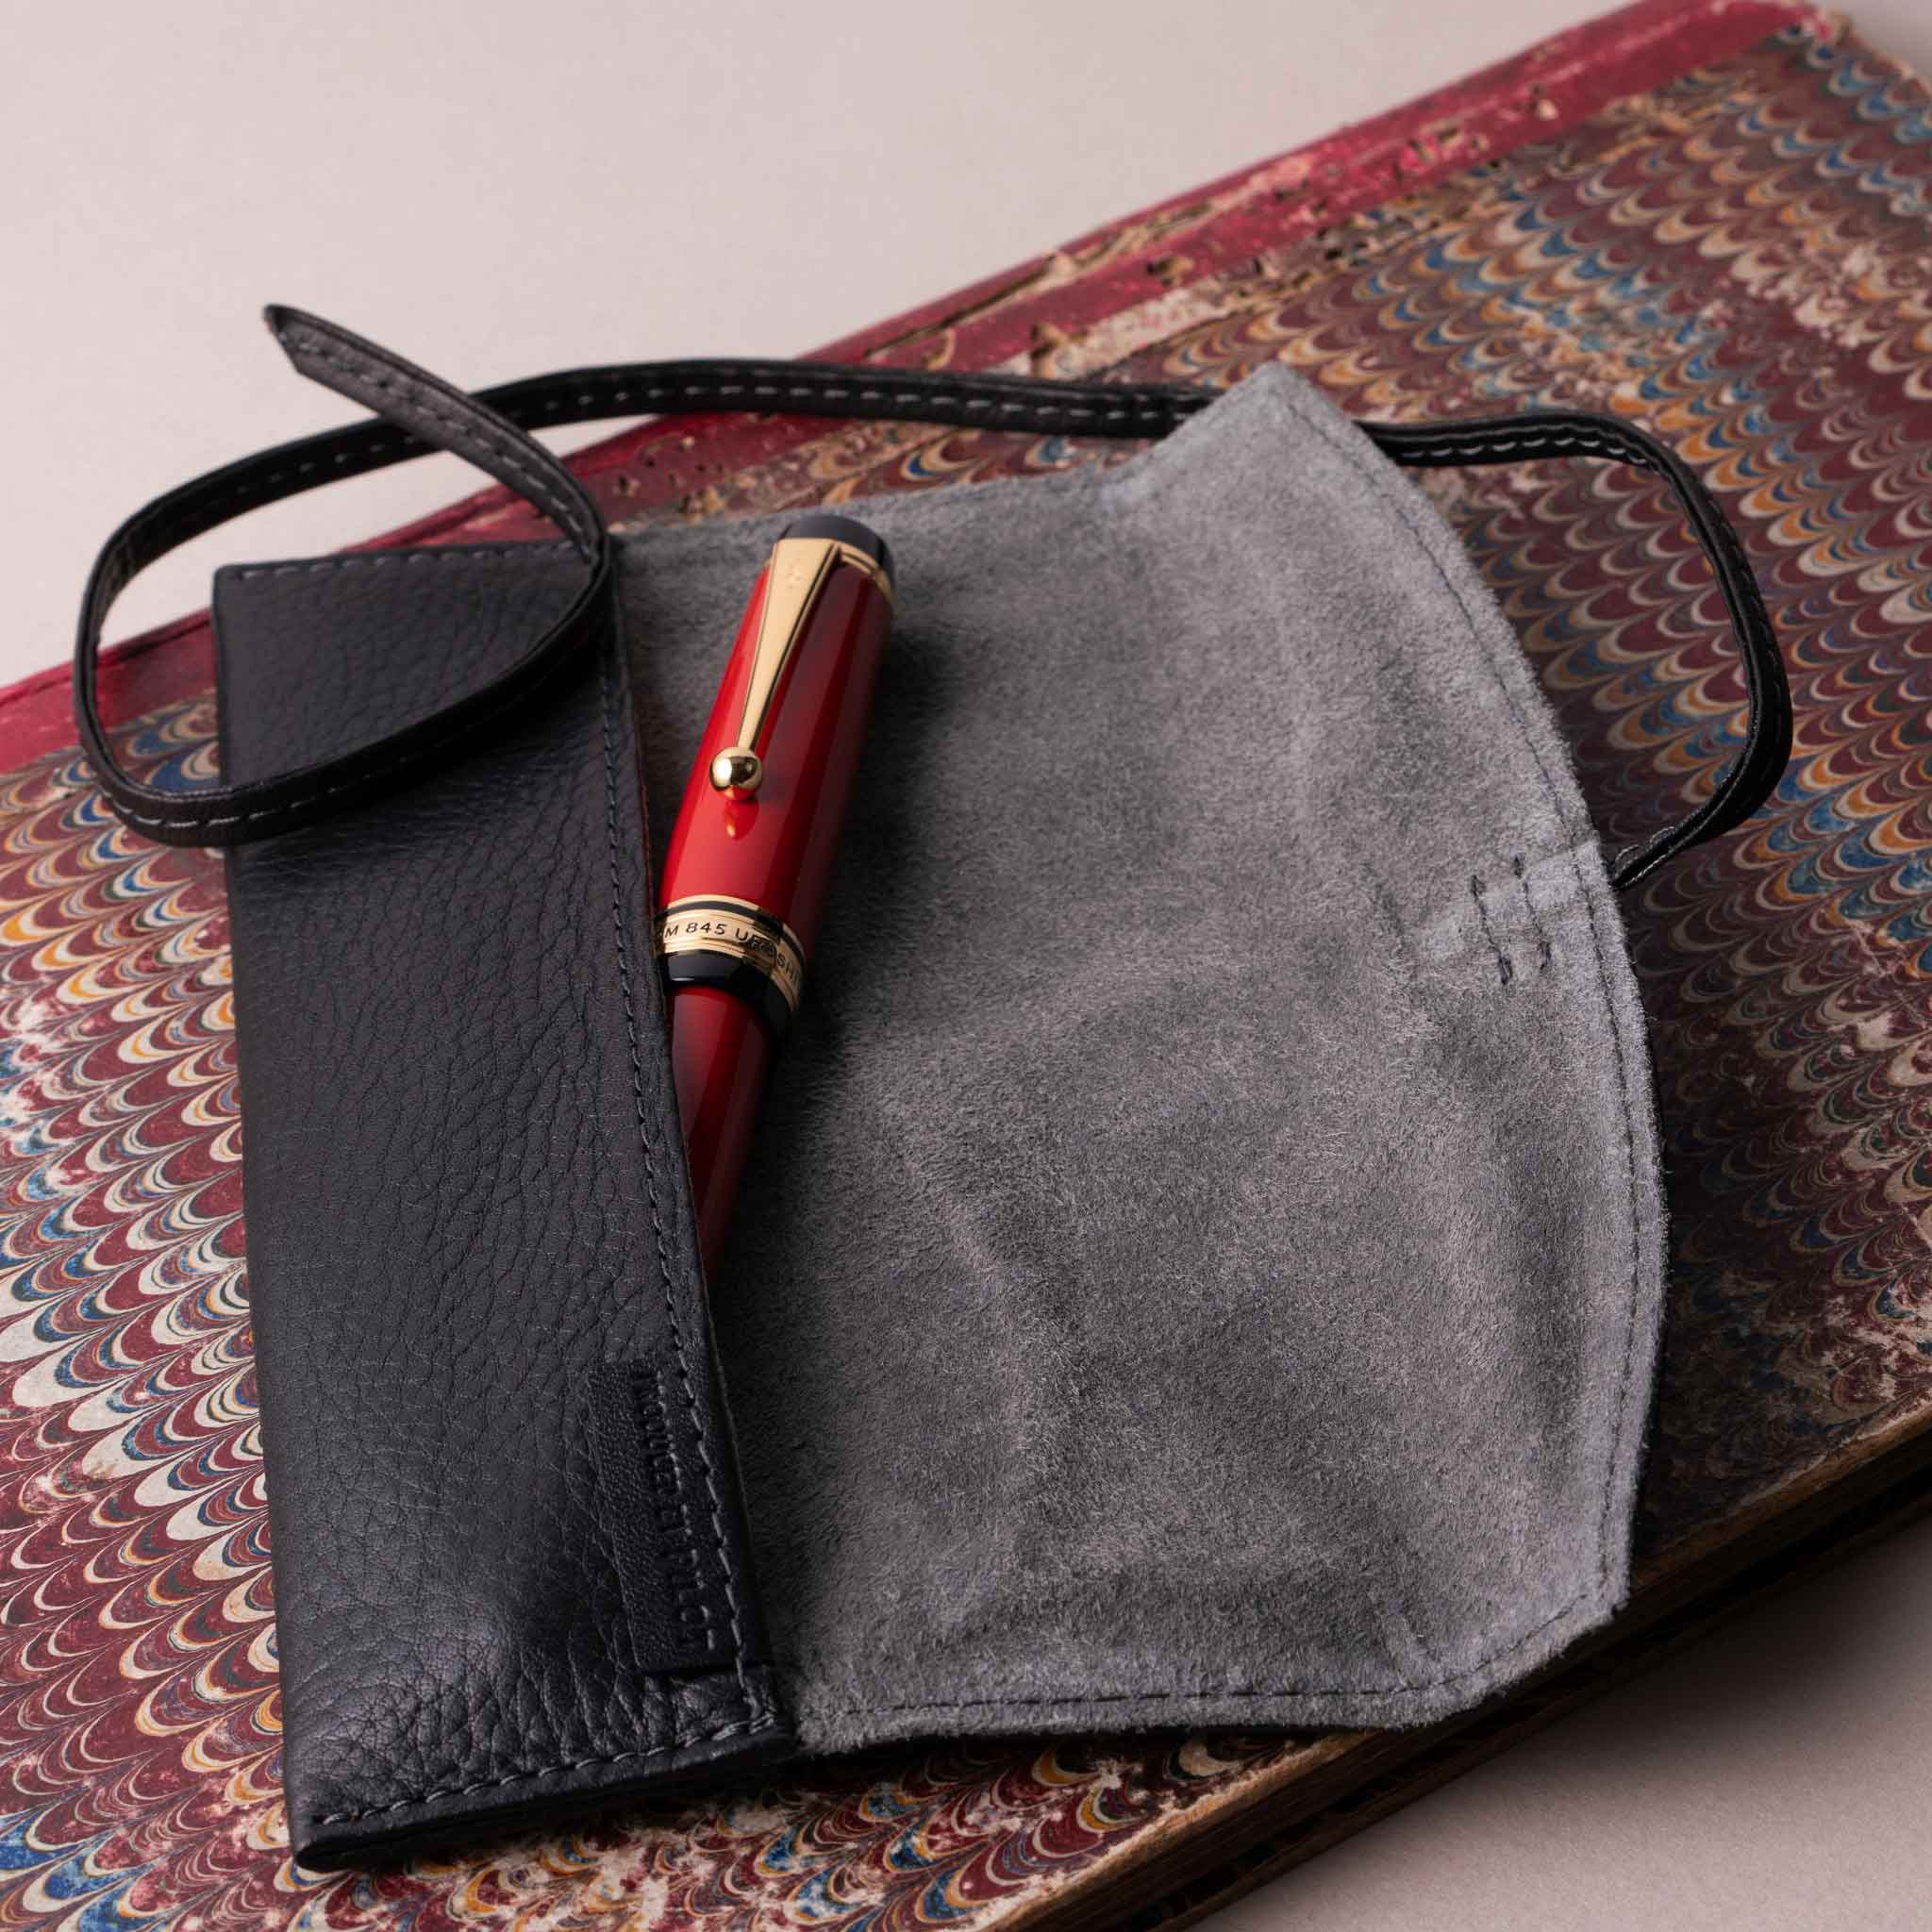 Tom Leather Pencil Case - Zippered Pen Pouch (Cognac)